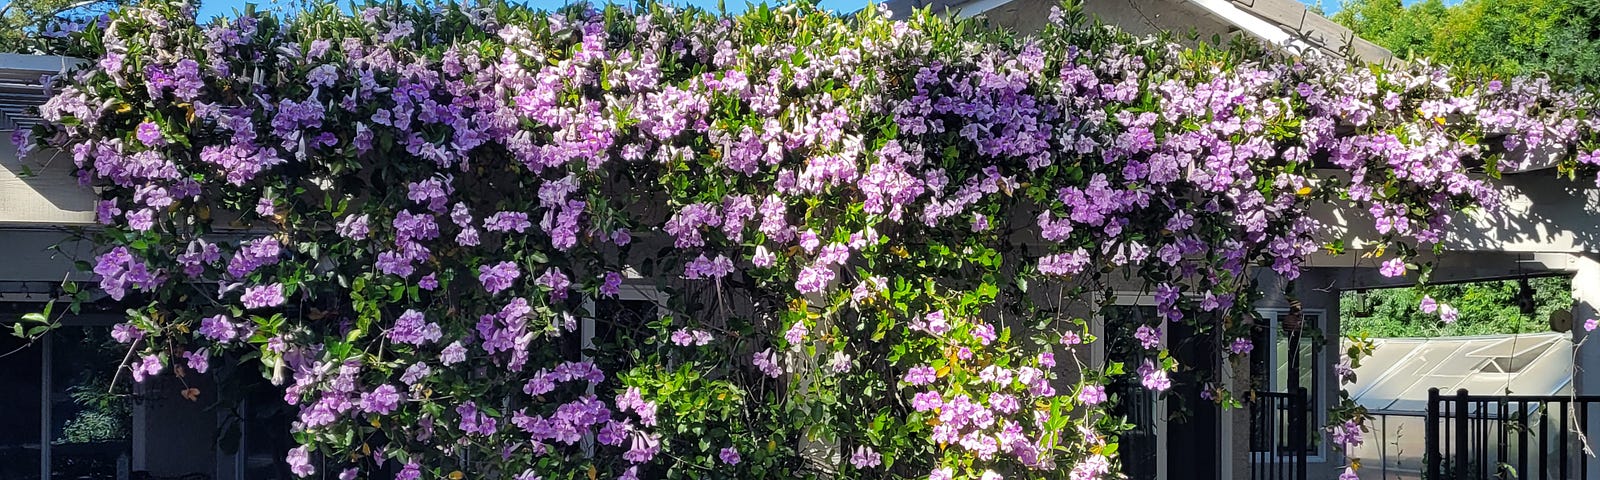 Purple flowers covering a trellis in my backyard.